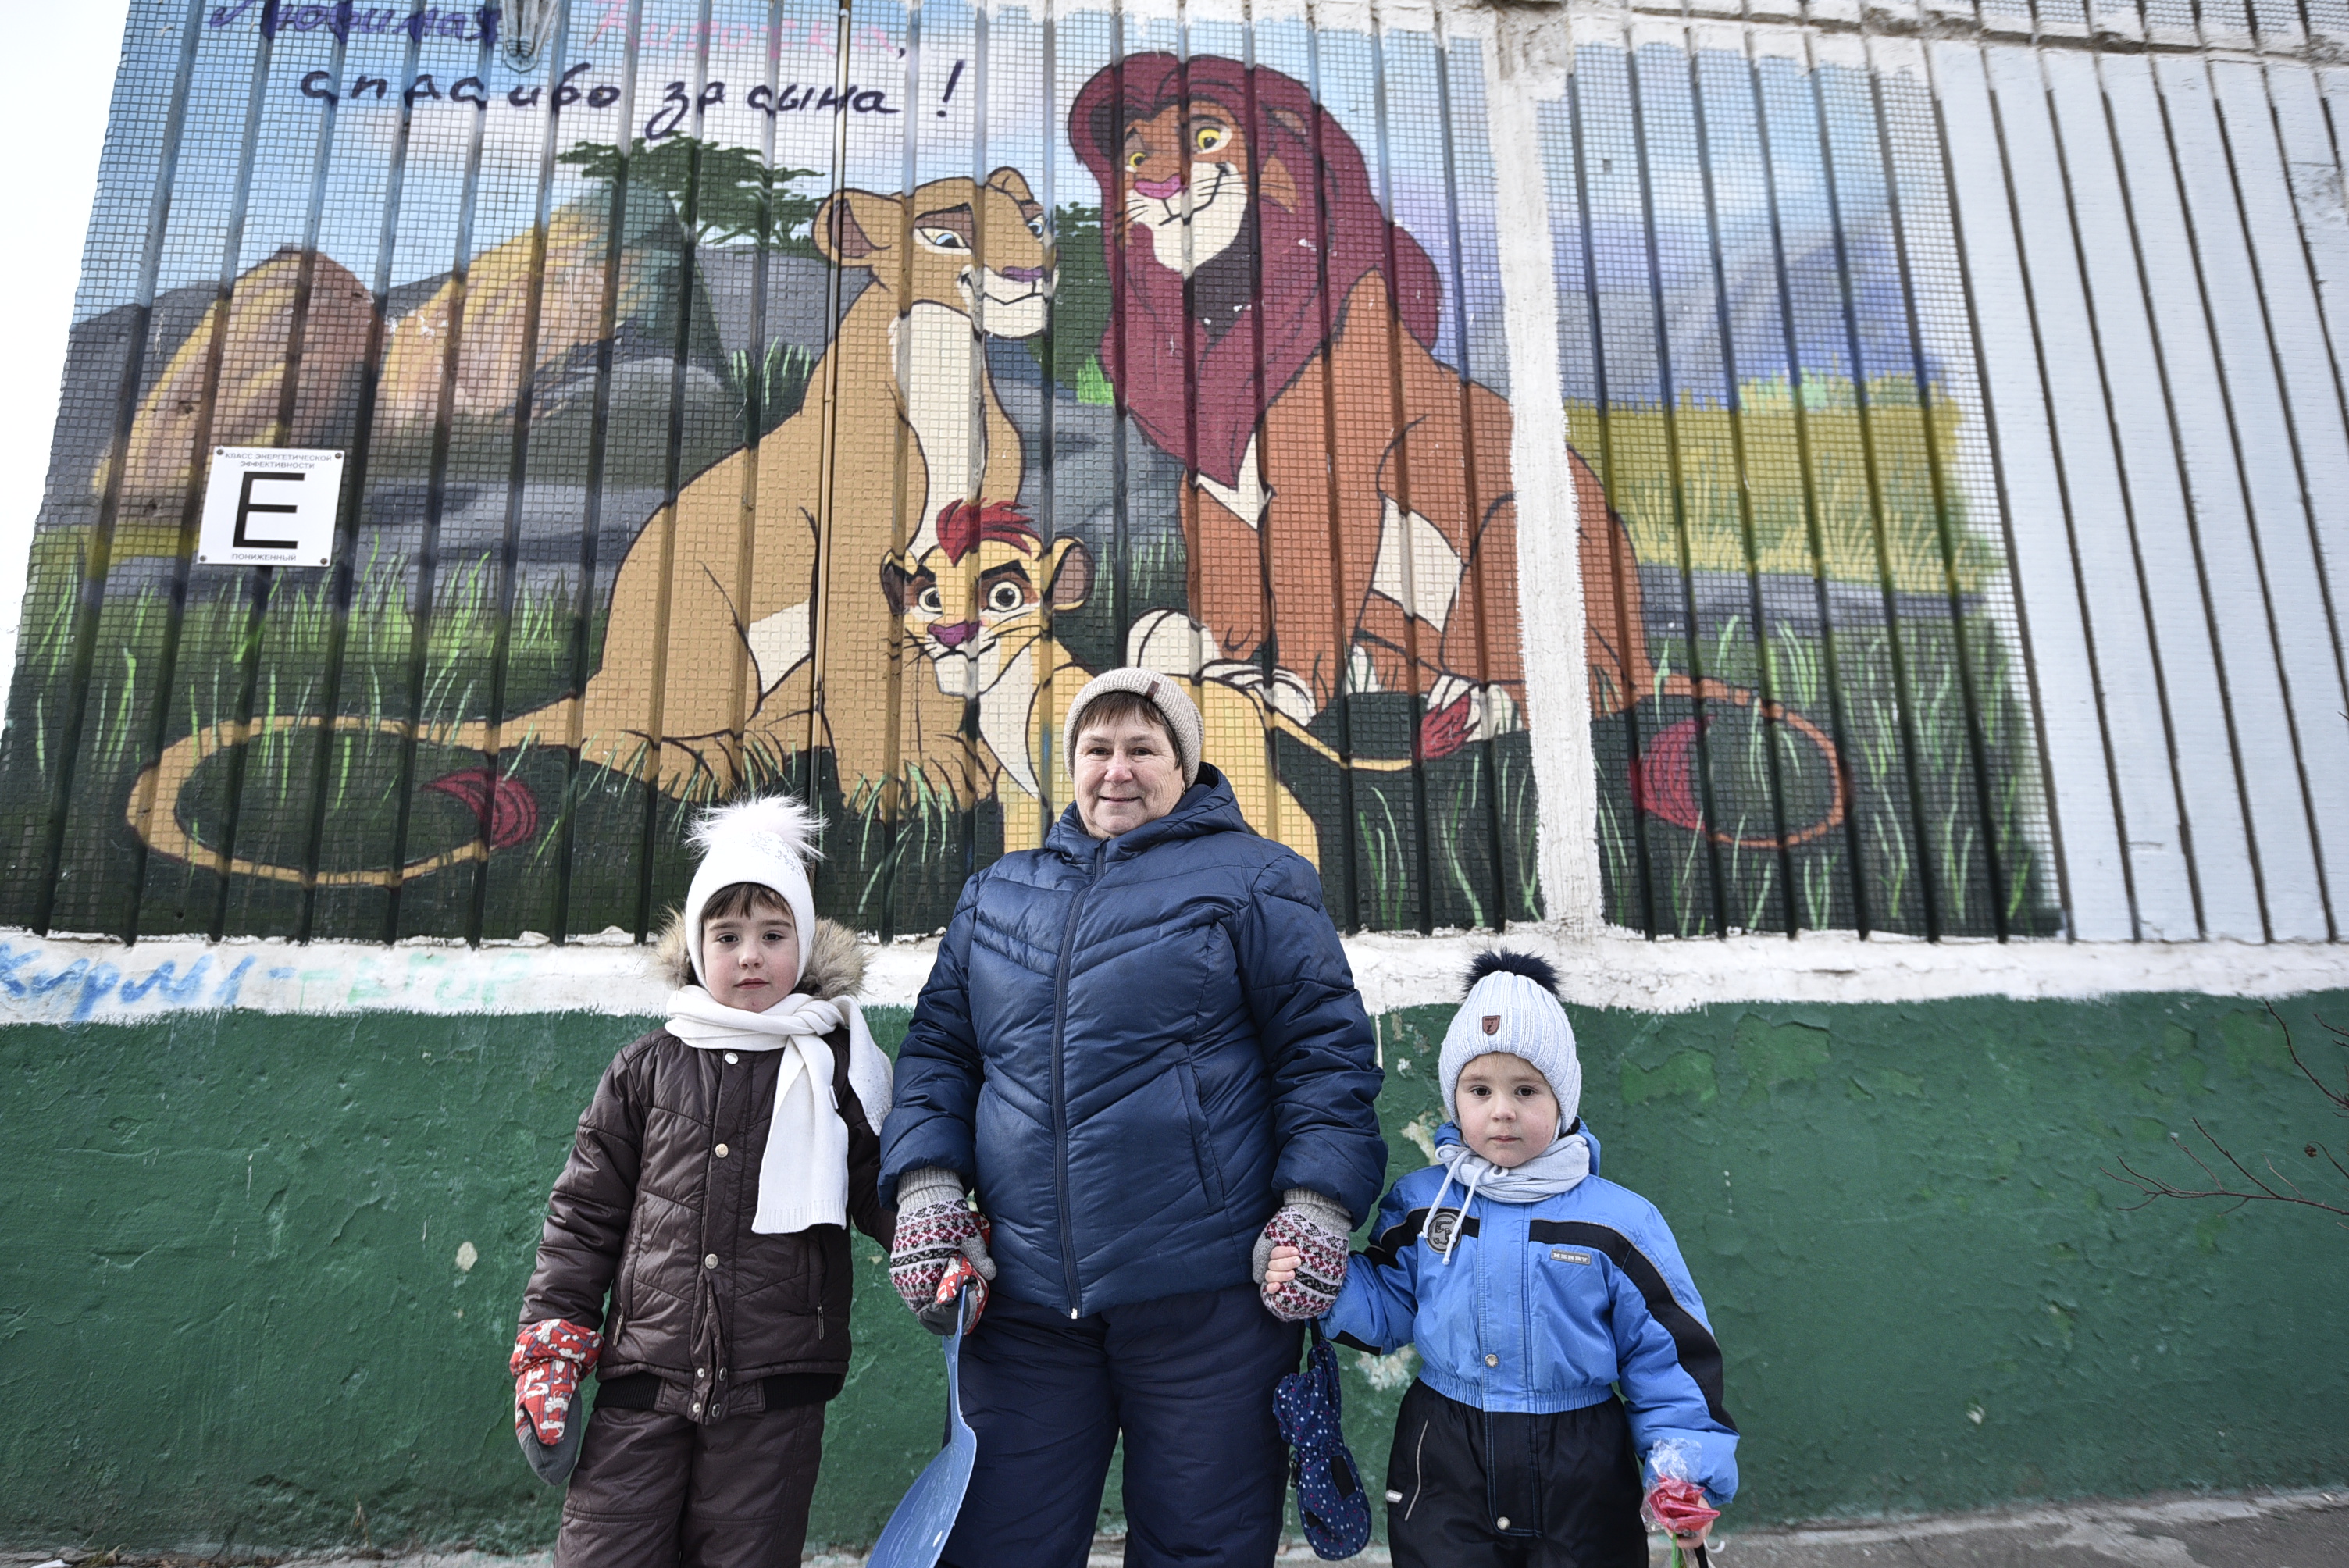 12 декабря 2020 года. Пенсионерка Нина Исаева на прогулке с внучками Ксюшей (слева) и Машей любят приходить и рассматривать граффити по мотивам мультика. Фото: Пелагия Замятина